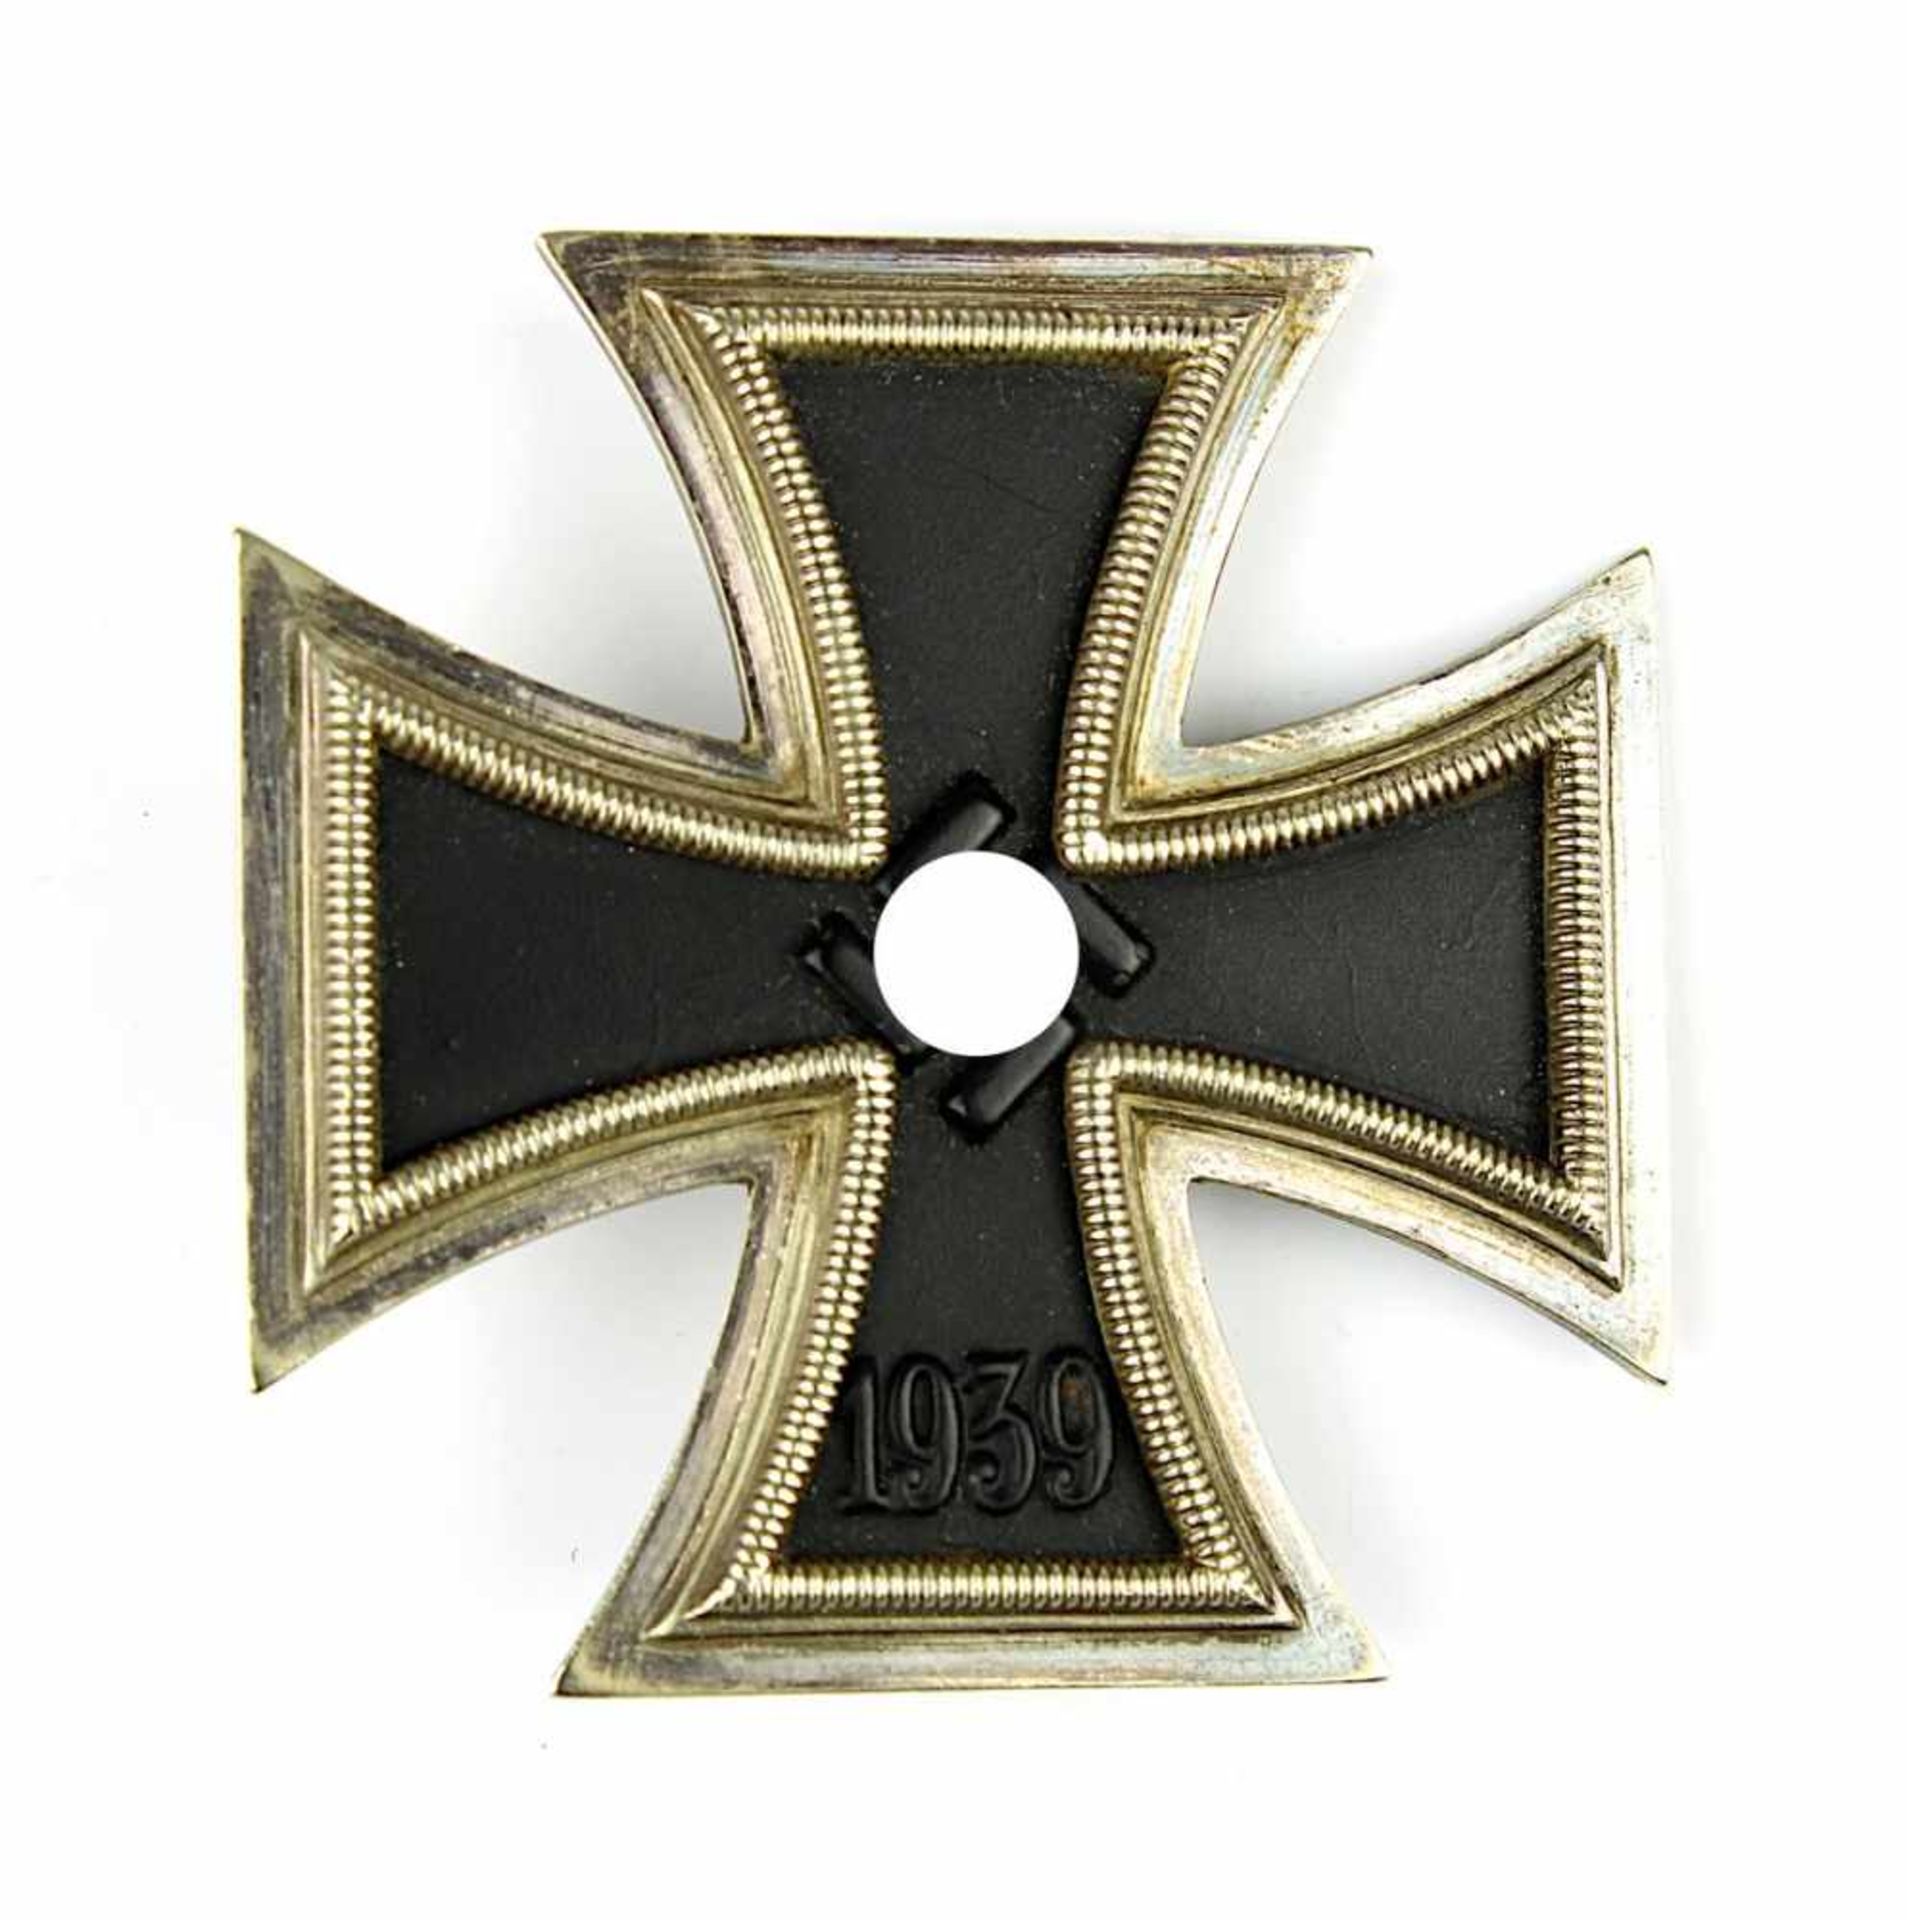 Eisernes Kreuz erster Klasse, Deutsches Reich 1933 - 1945, mit Herstellerzeichen, "L /11", Eisenkern